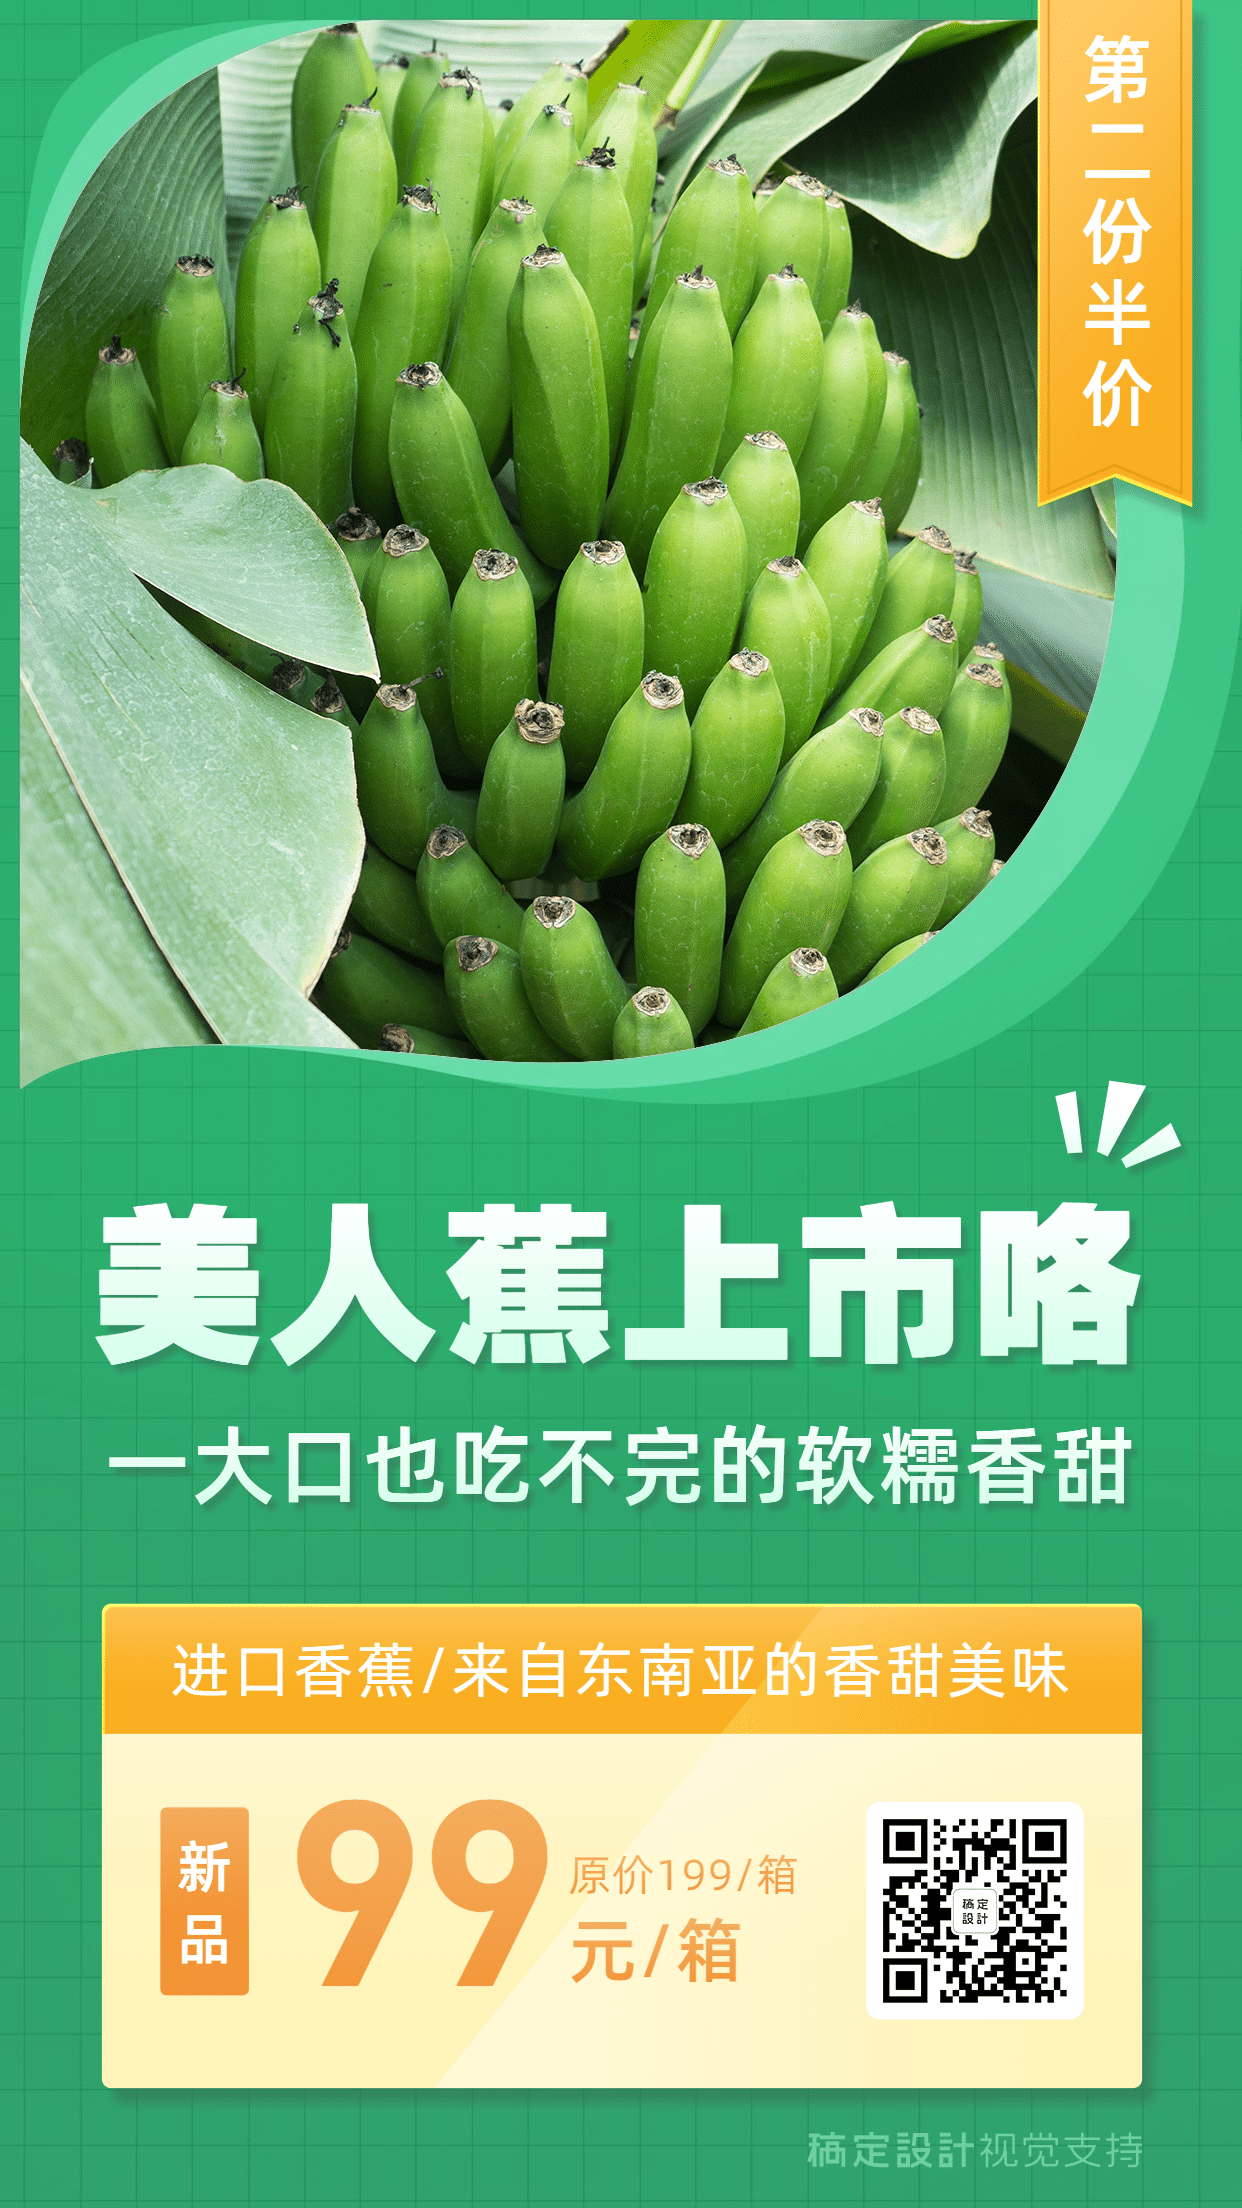 绿色产品介绍生鲜水果营销海报